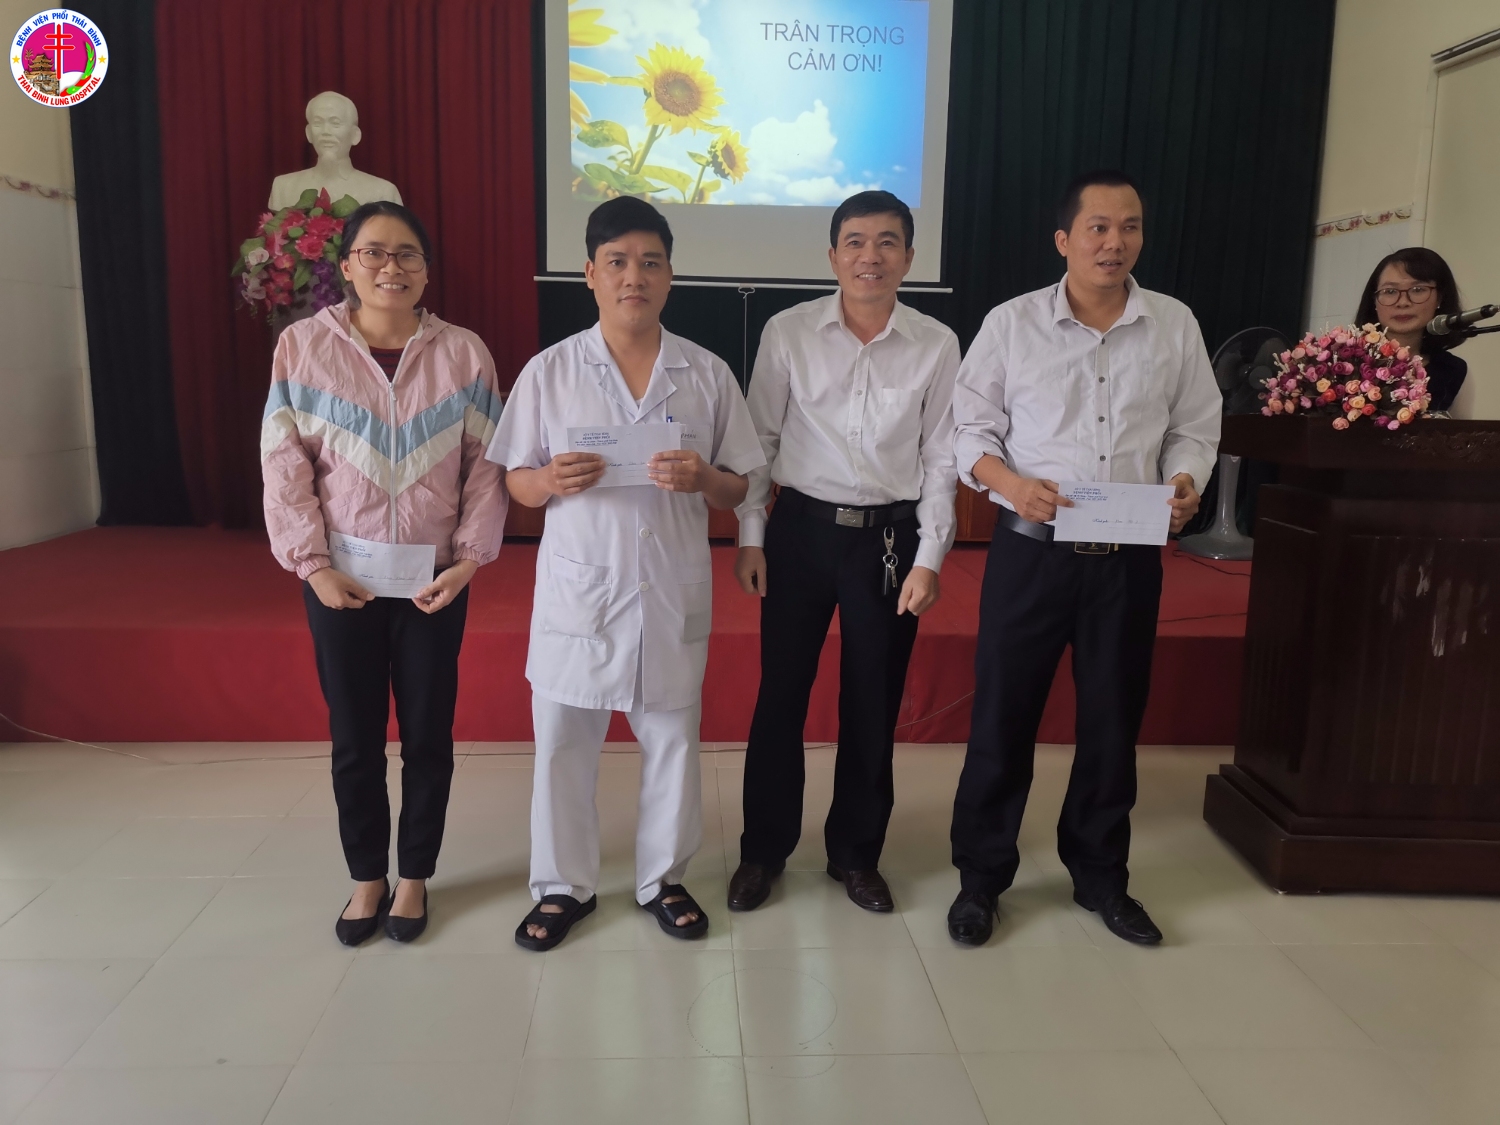 Đồng chí Vũ Văn Trâm - Giám đốc Bệnh viện trao thưởng cho 3 khoa có thành tích xuất sắc trong thực hiện chủ trương phát triển của bệnh viện 